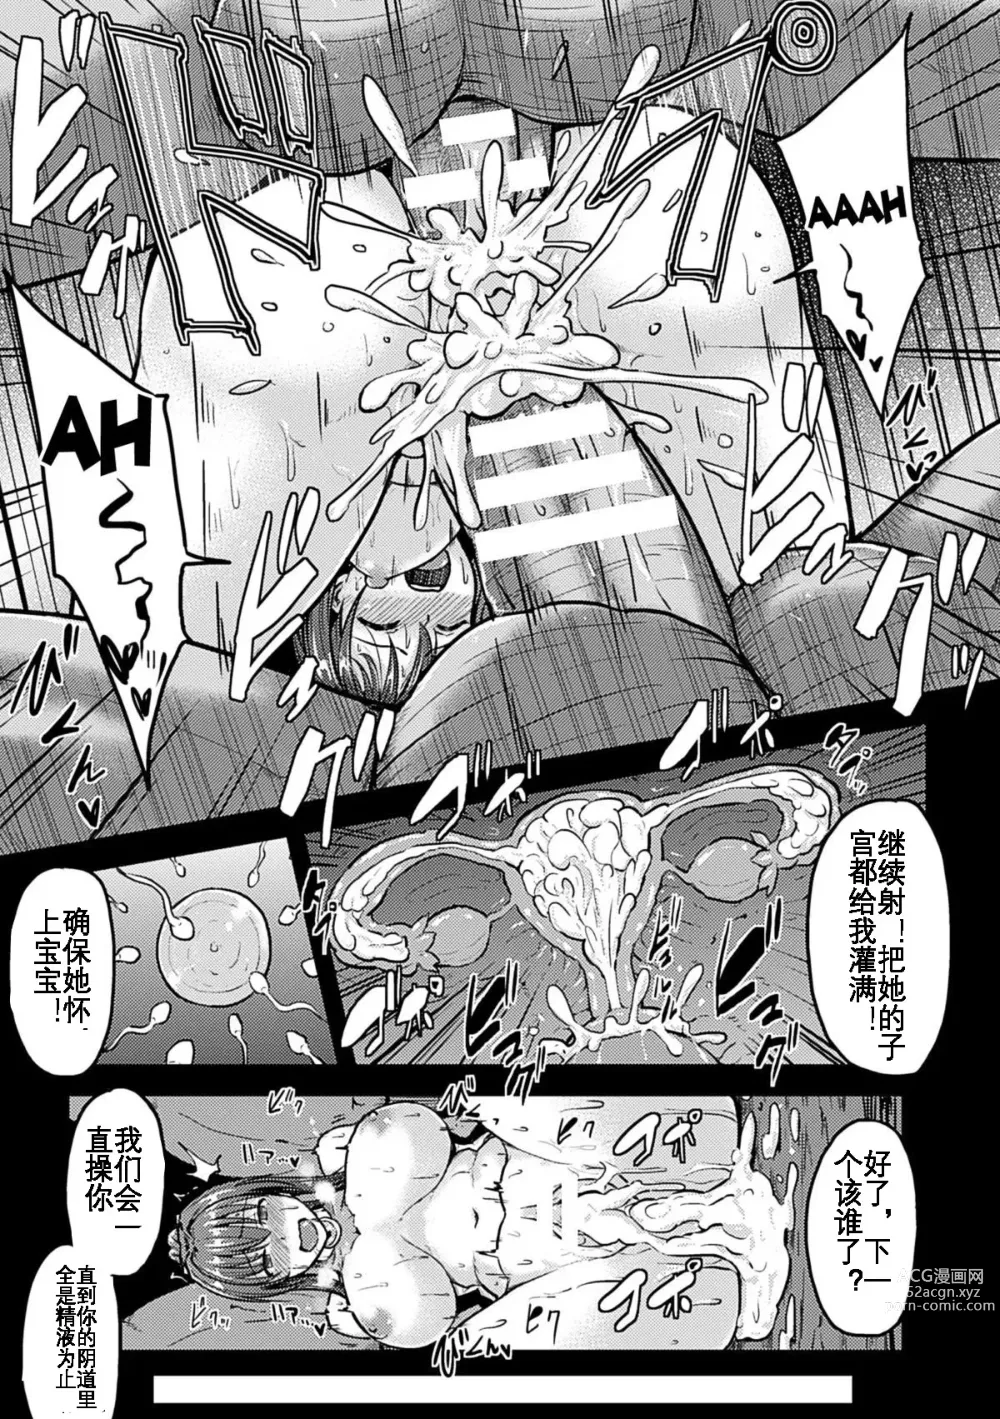 Page 22 of manga Irisraker Buta no Ko o Haramu Seigi no Senshi